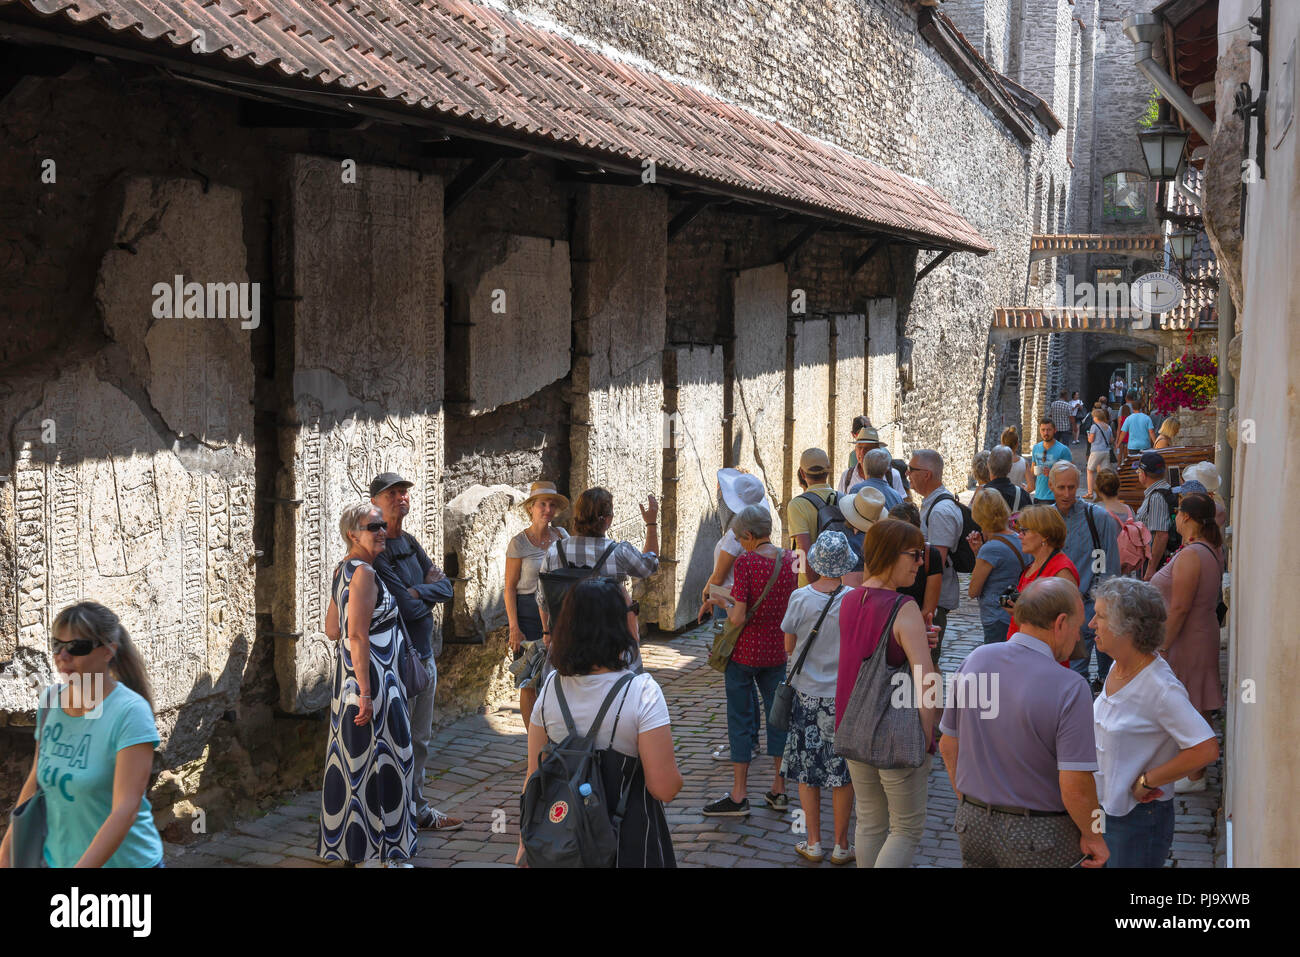 Le tourisme de la mer Baltique, les touristes d'été voir d'énormes pierres tombales médiévales fixés à un mur en Katarina kaik dans la vieille ville de Tallinn, Estonie. Banque D'Images